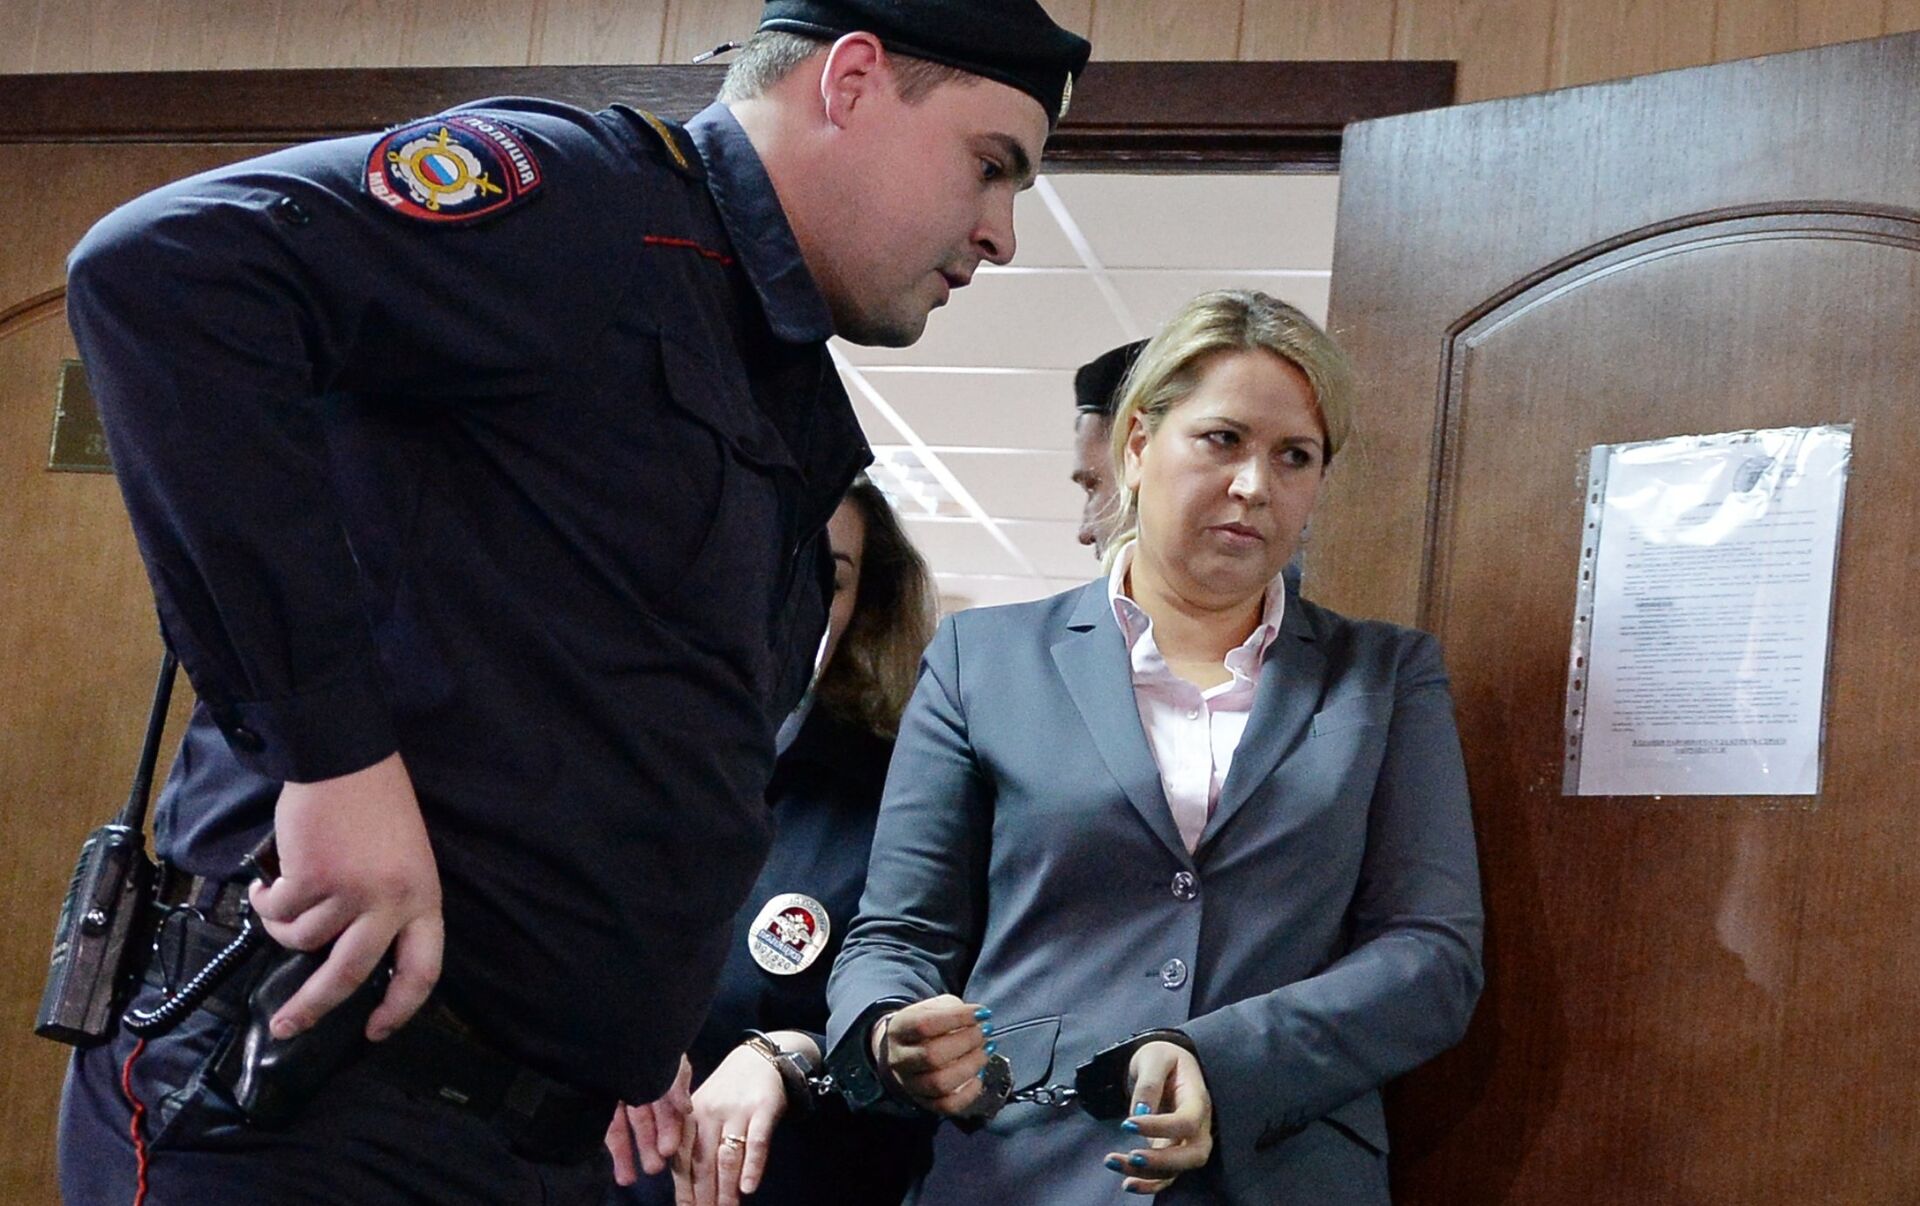 Евгения Васильева в суде